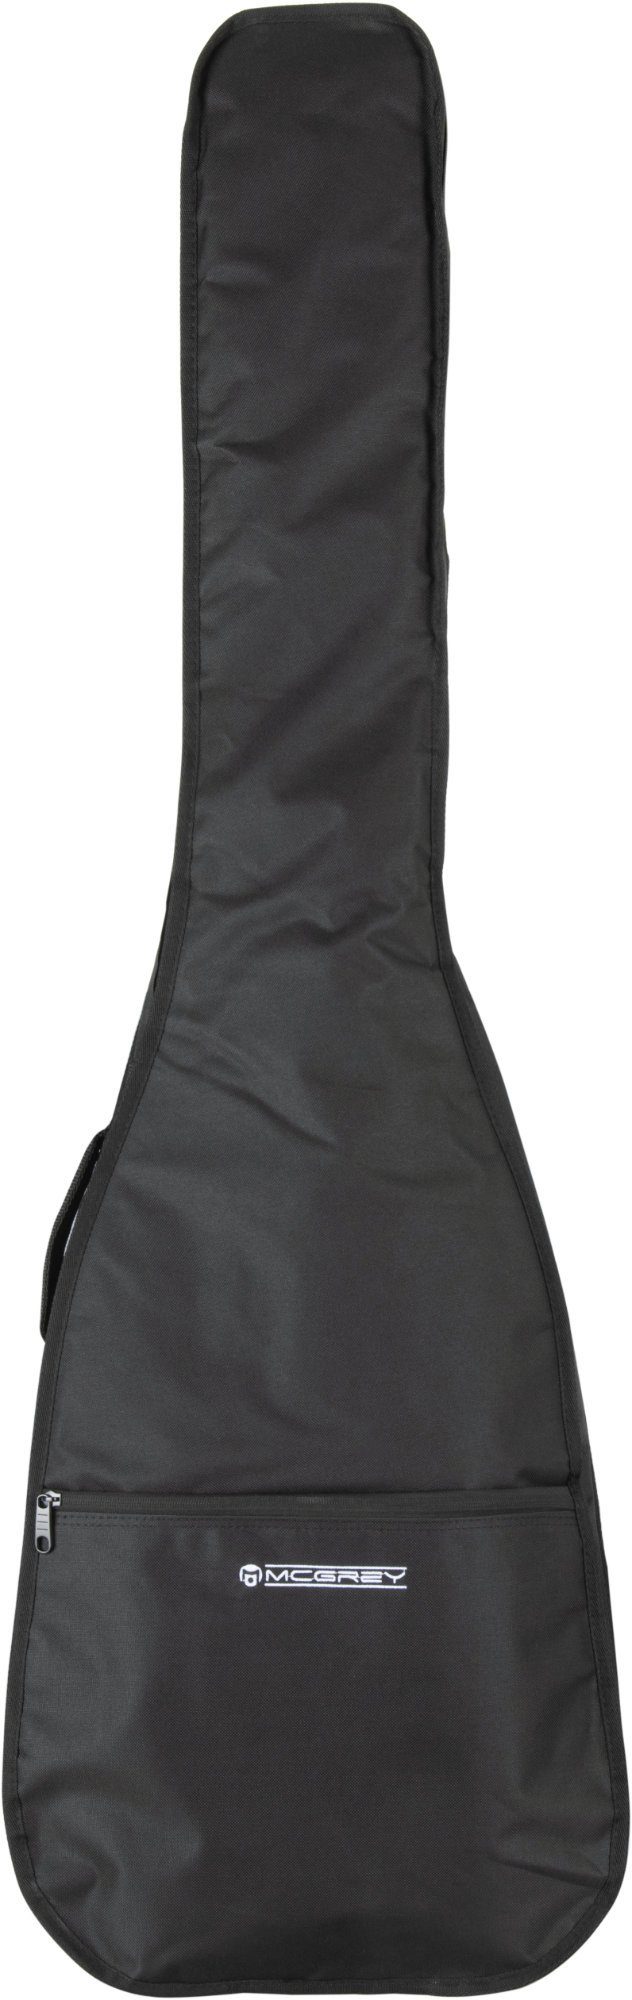 Schwarz, Rucksackgurten mit verstellbaren McGrey Gitarrentasche E-Basstasche EBEB-1222BK gepolsterte aus E-Basstasche Nylon